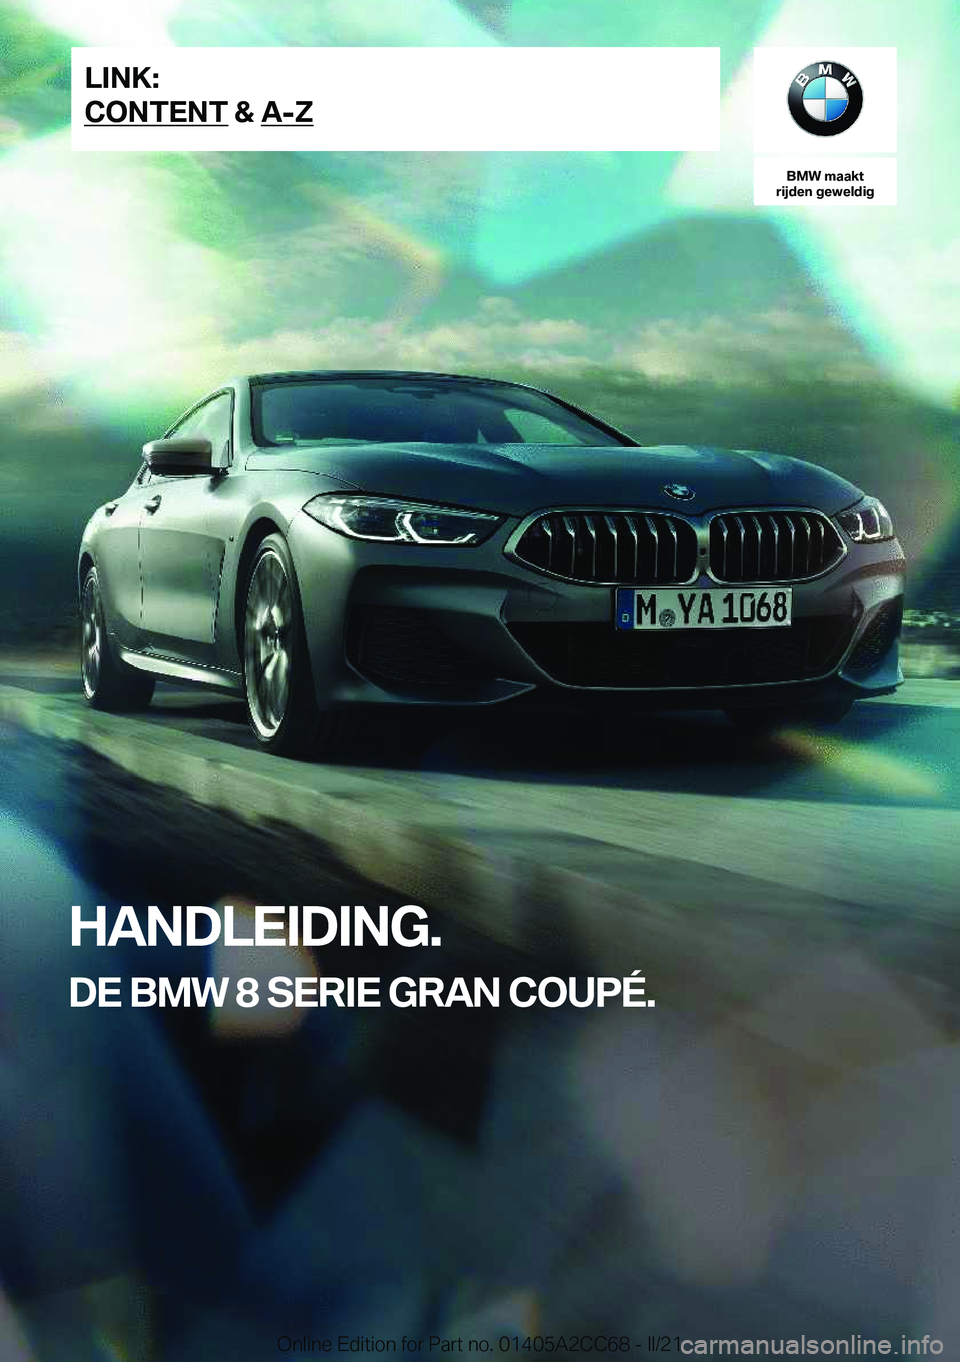 BMW 8 SERIES GRAN COUPE 2022  Instructieboekjes (in Dutch) �B�M�W��m�a�a�k�t
�r�i�j�d�e�n��g�e�w�e�l�d�i�g
�H�A�N�D�L�E�I�D�I�N�G�.
�D�E��B�M�W��8��S�E�R�I�E��G�R�A�N��C�O�U�P�